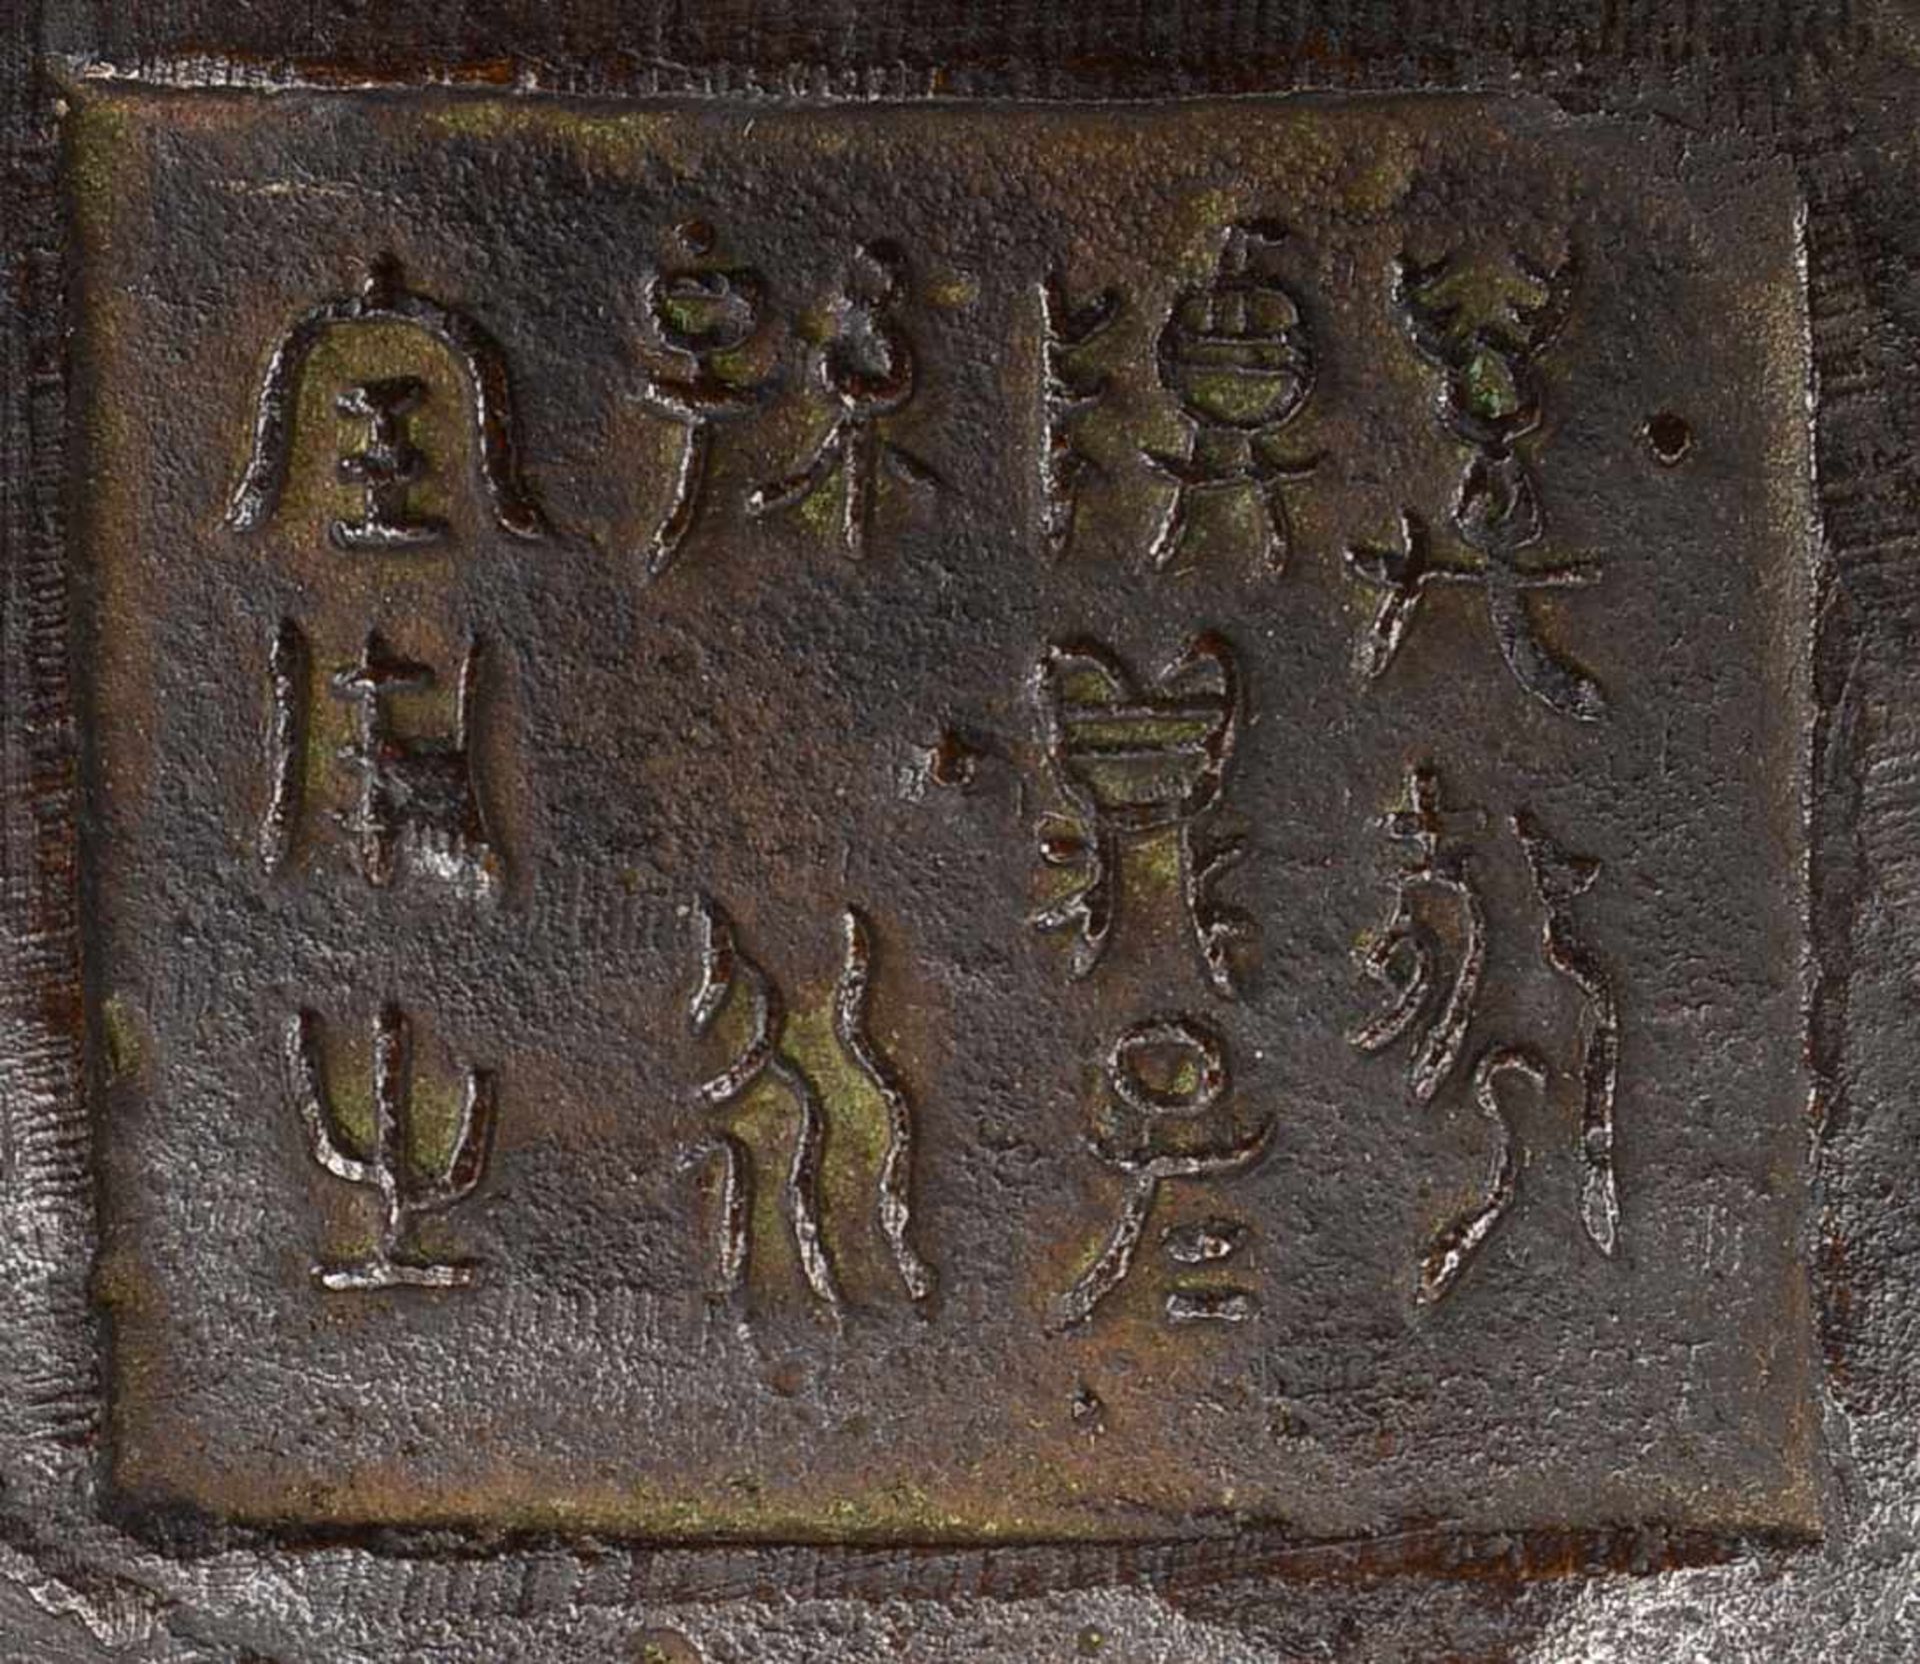 Bronzegefäß, China, alt, bauchige Form mit kurzem Hals, umlaufend reliefiert (Vogel-Motive), - Bild 2 aus 2